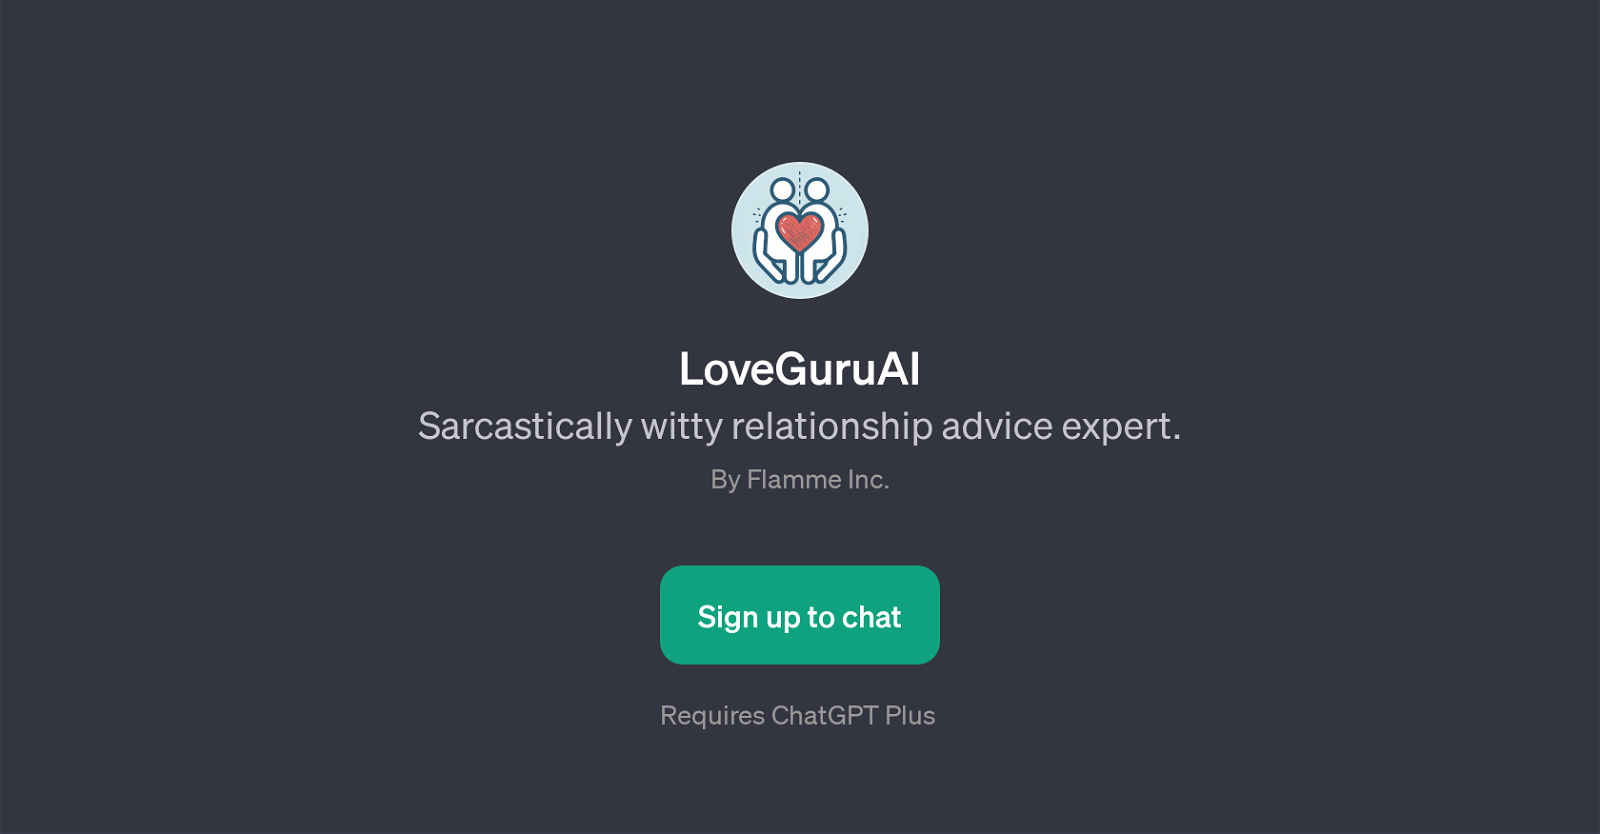 LoveGuruAI website